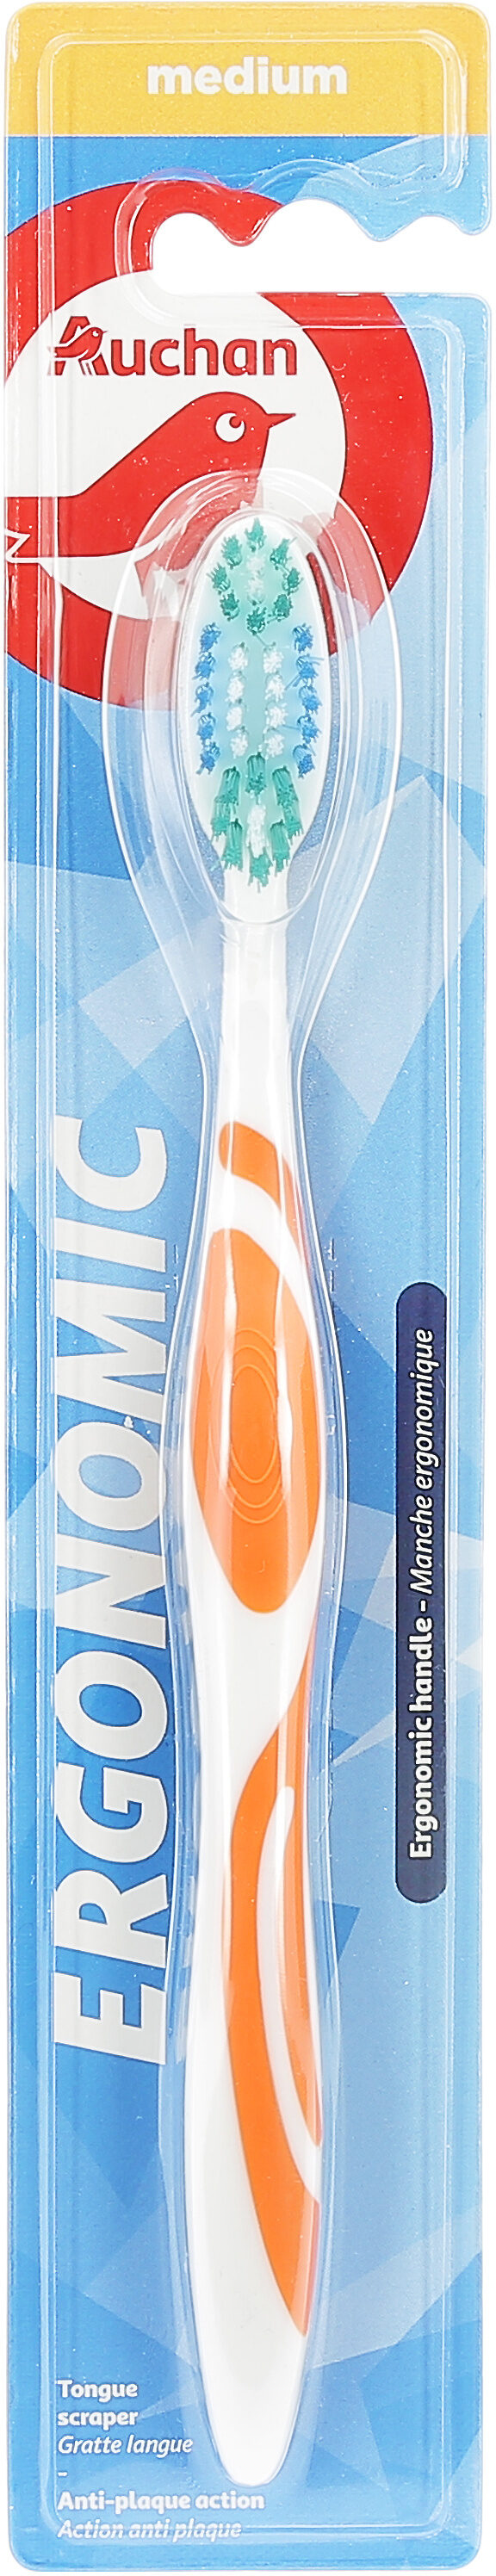 Brosse à dents ergonomique - Product - fr